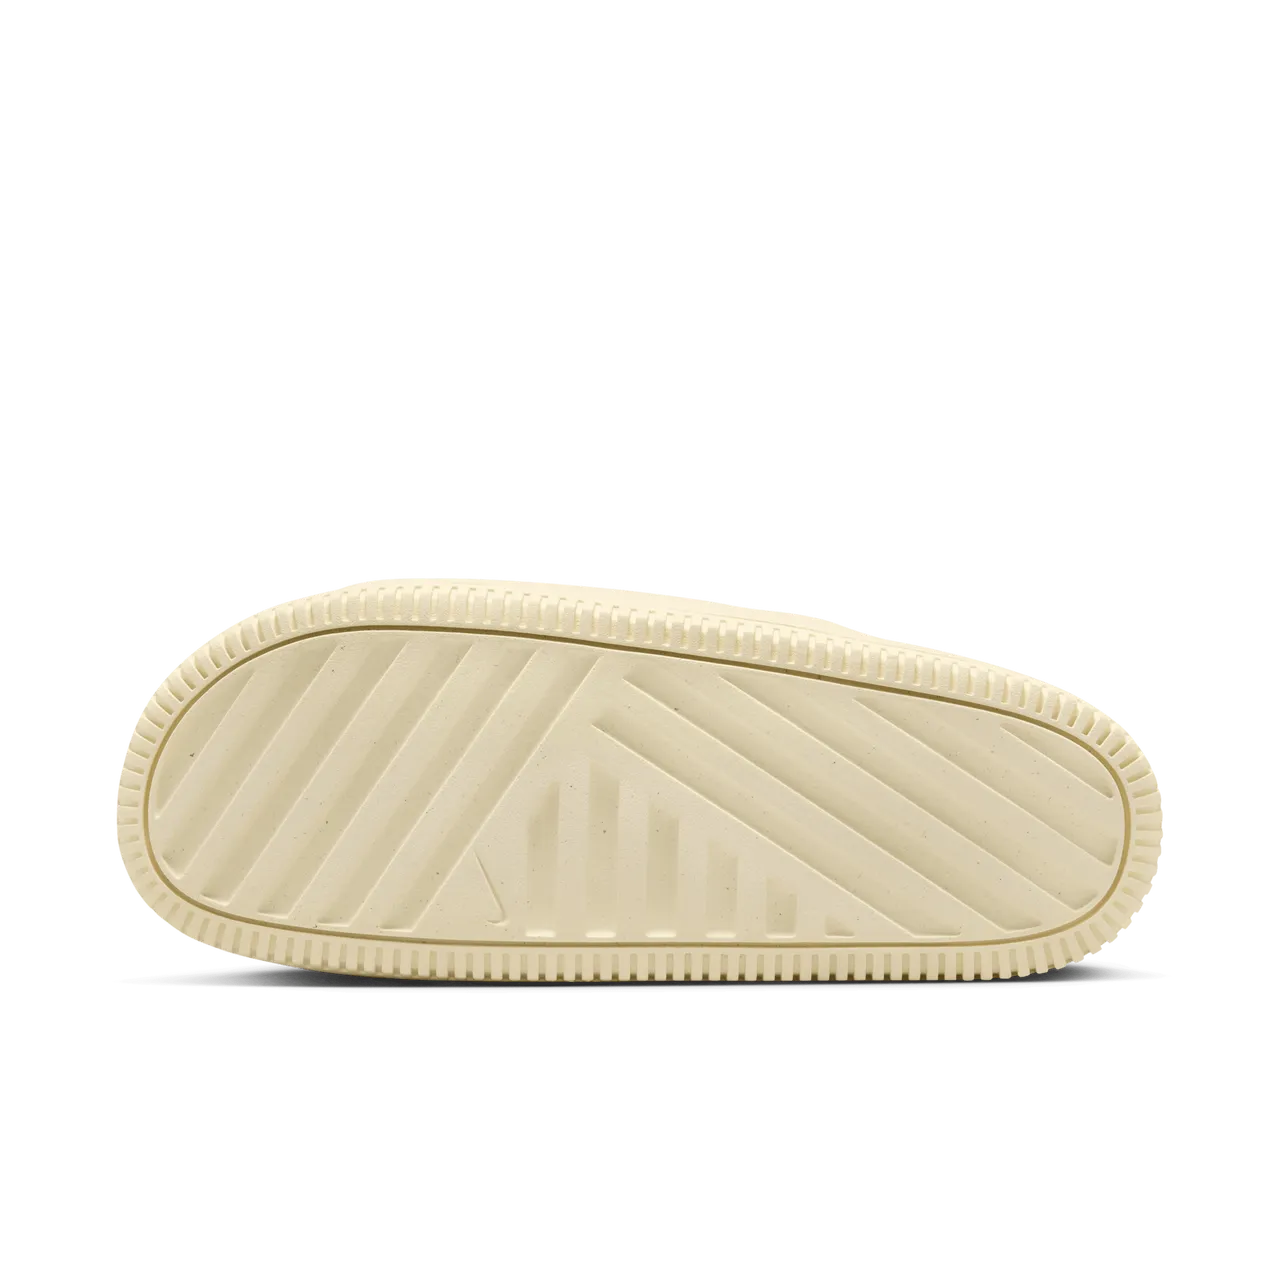 Nike Calm slippers voor dames - Bruin